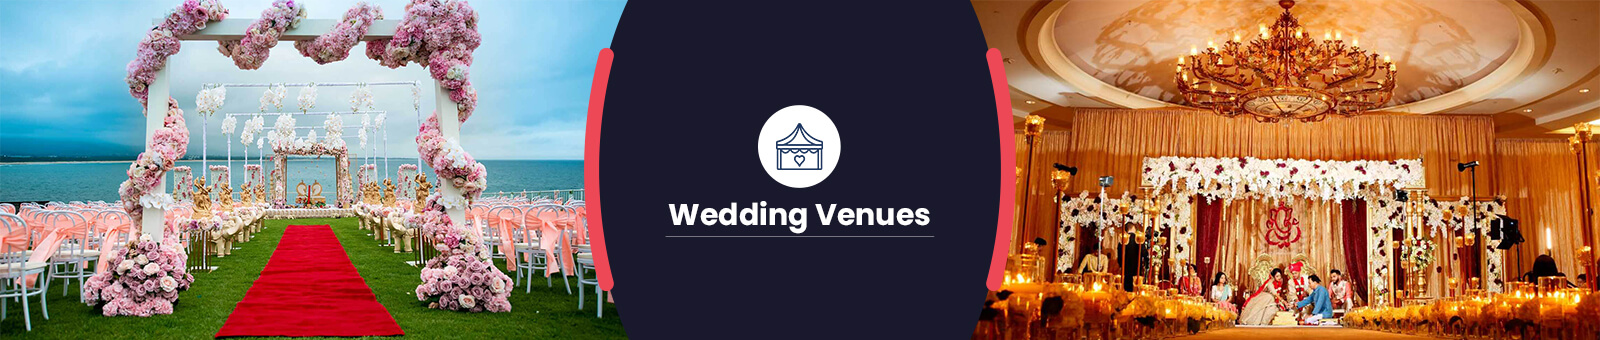 Top Wedding Venues in Ludhiana 